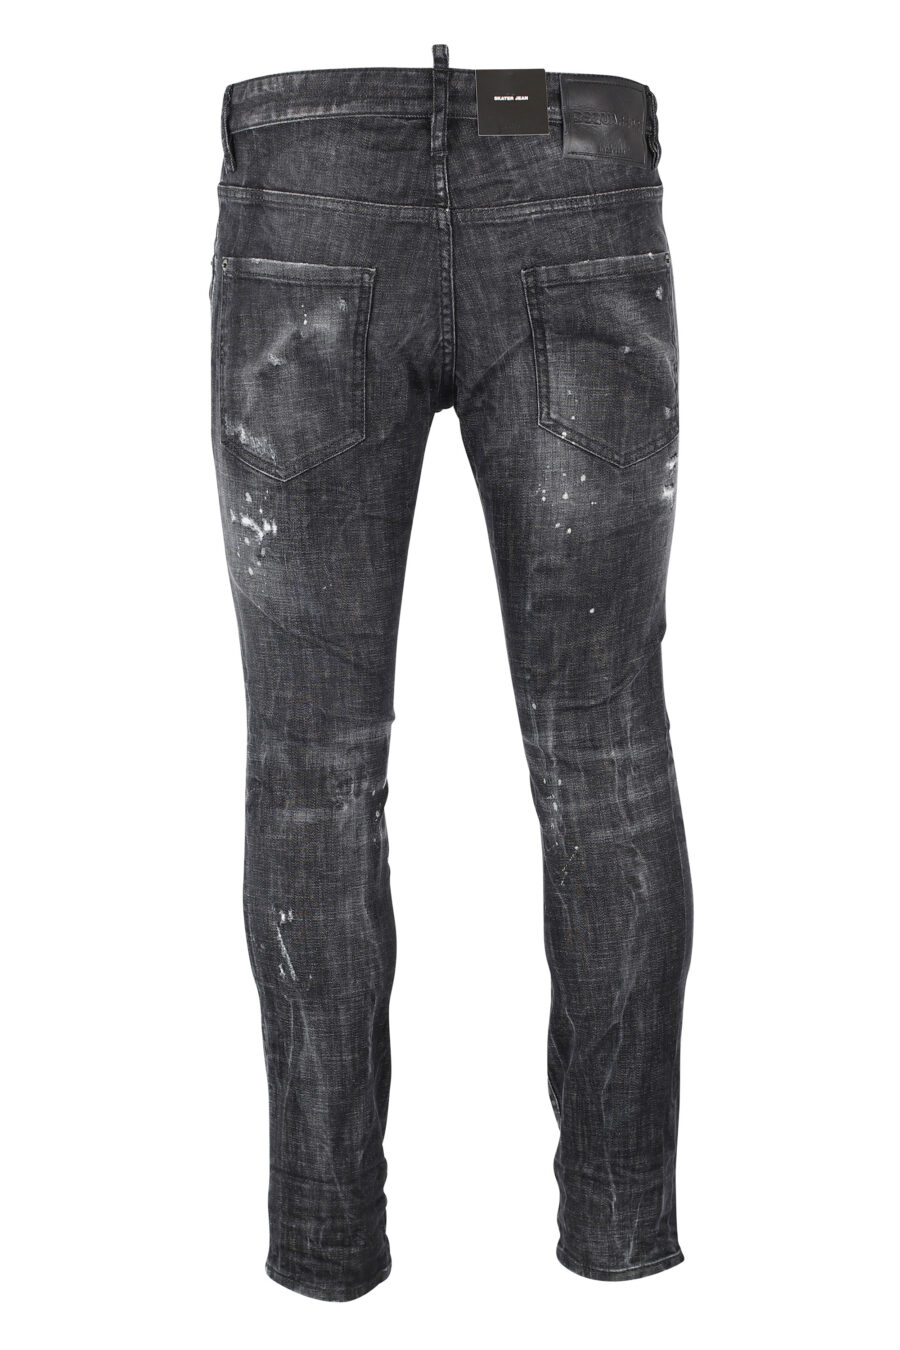 Pantalón vaquero "Skater Jean" negro con logo en botones y semiroto - IMG 0825